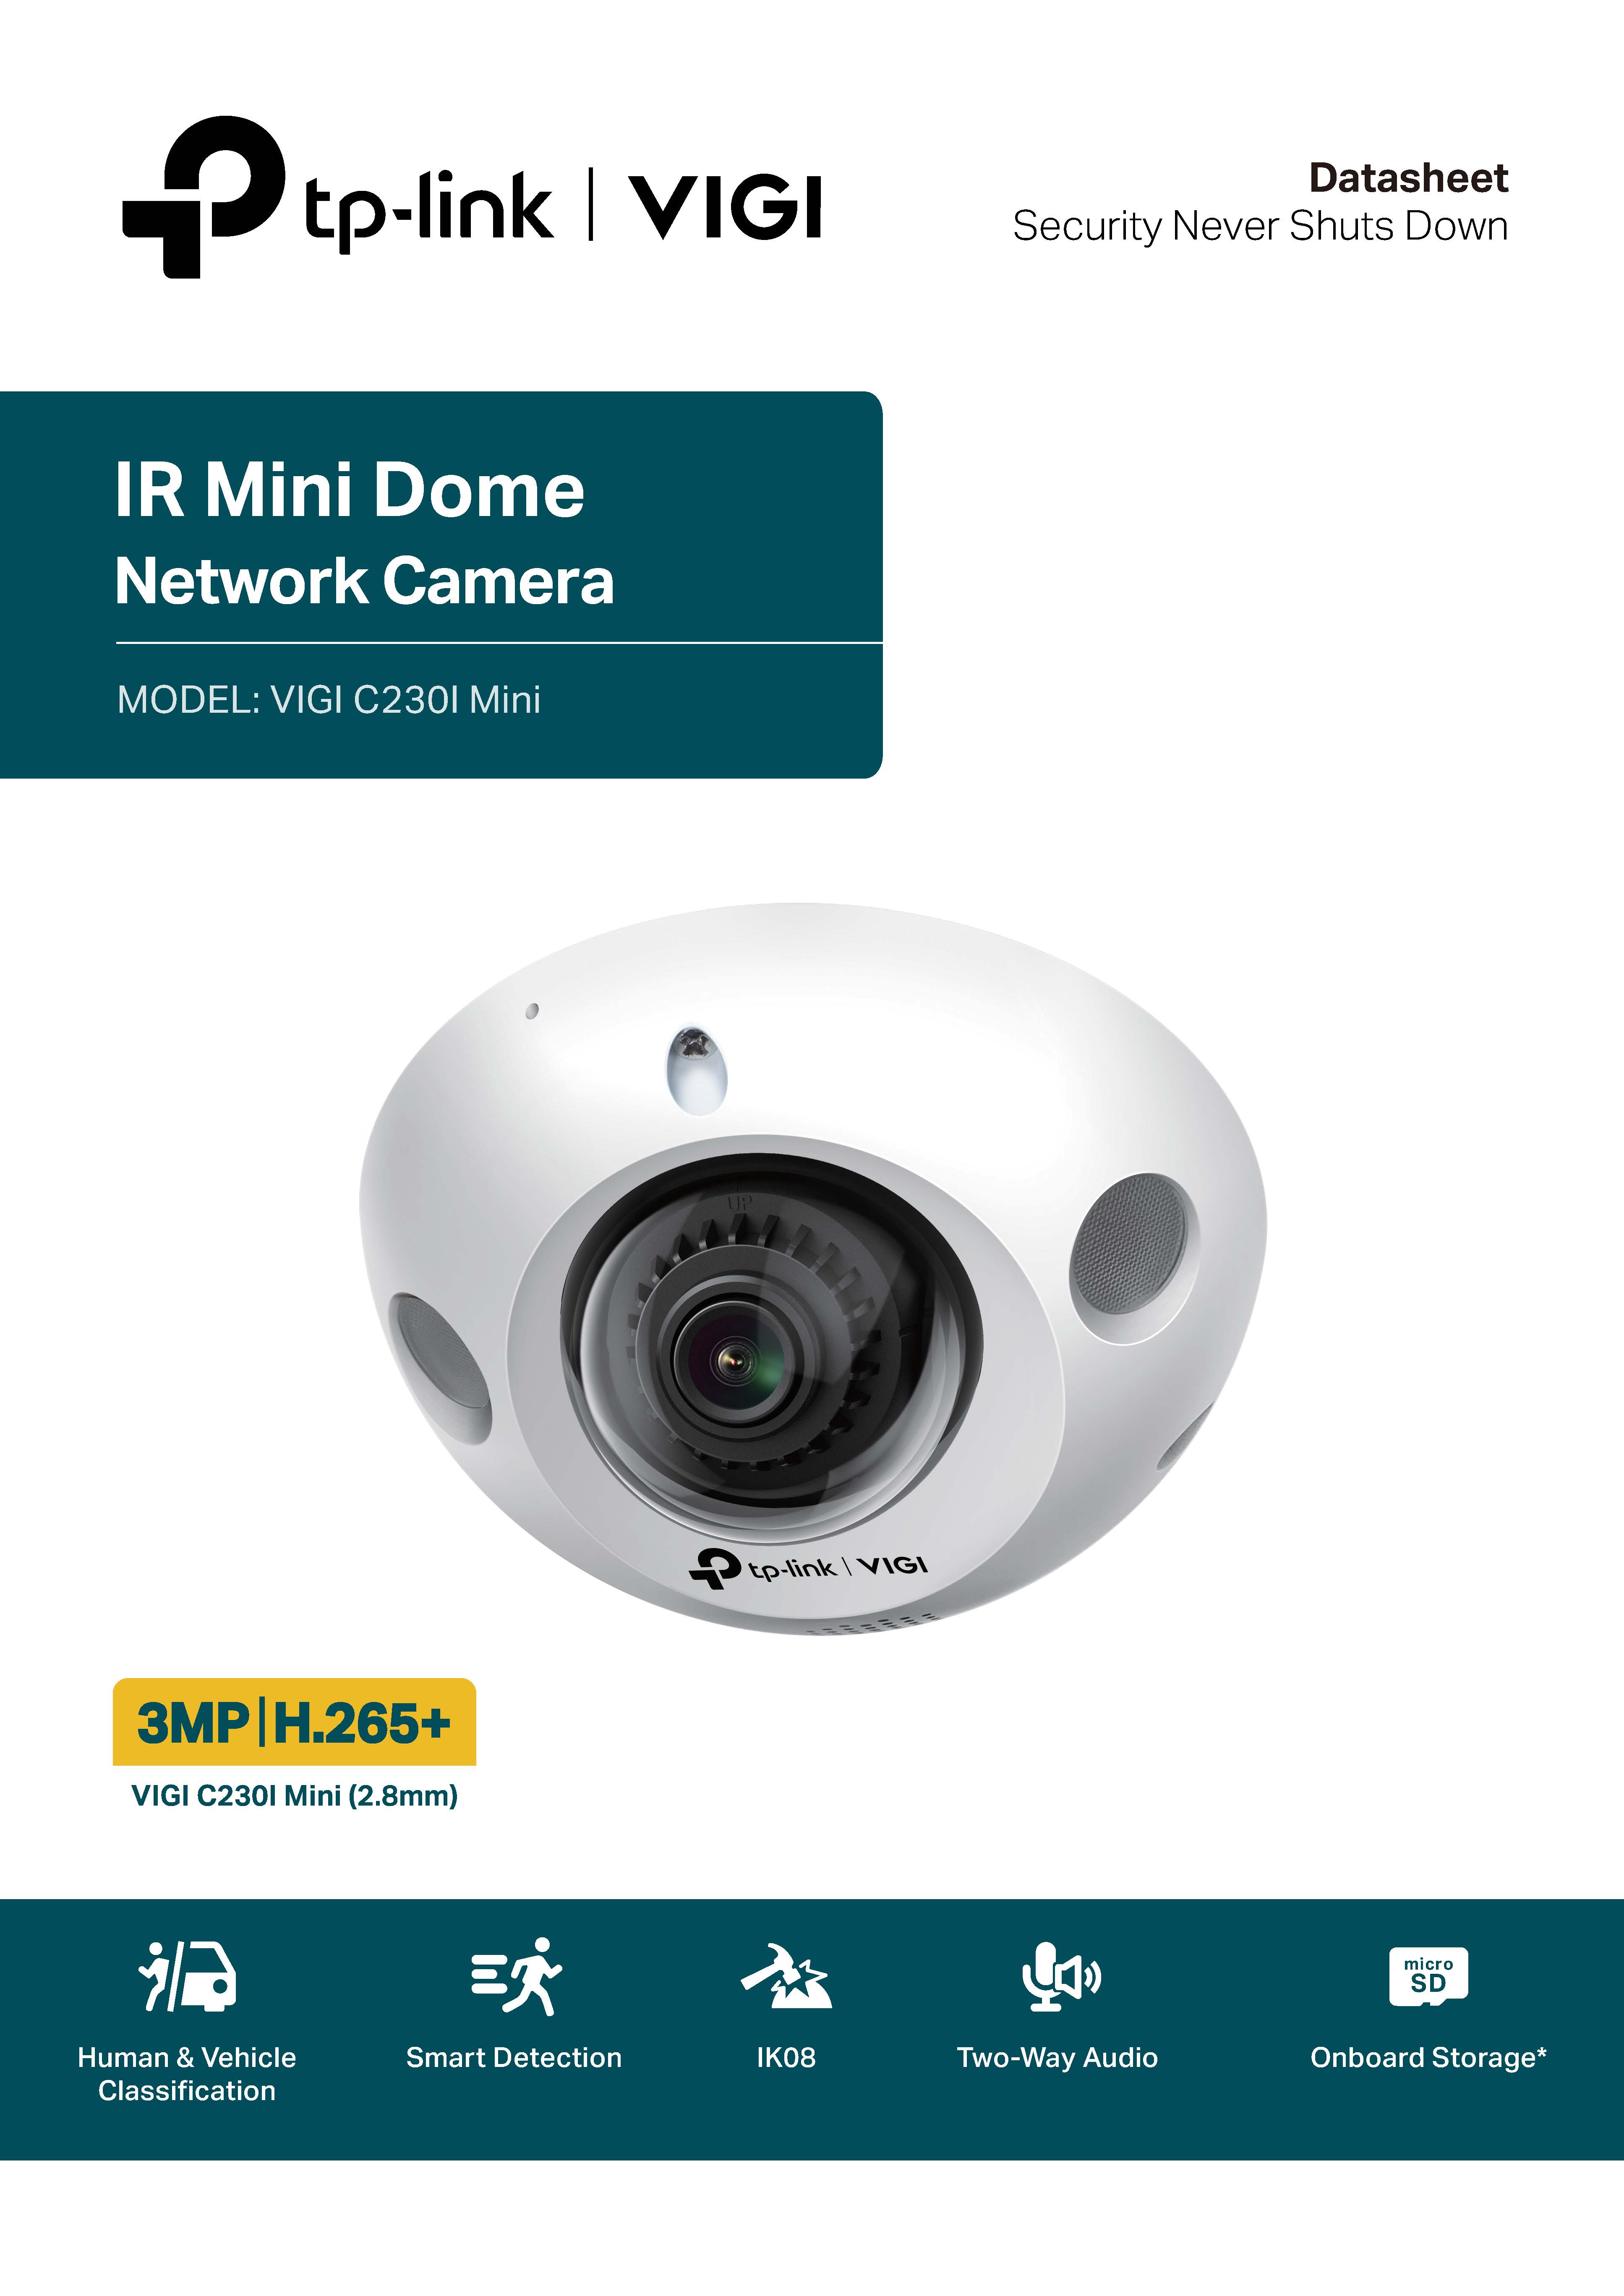 3MP IR Mini Dome Network Camera TP-Link VIGI C230I Mini - aimgroup